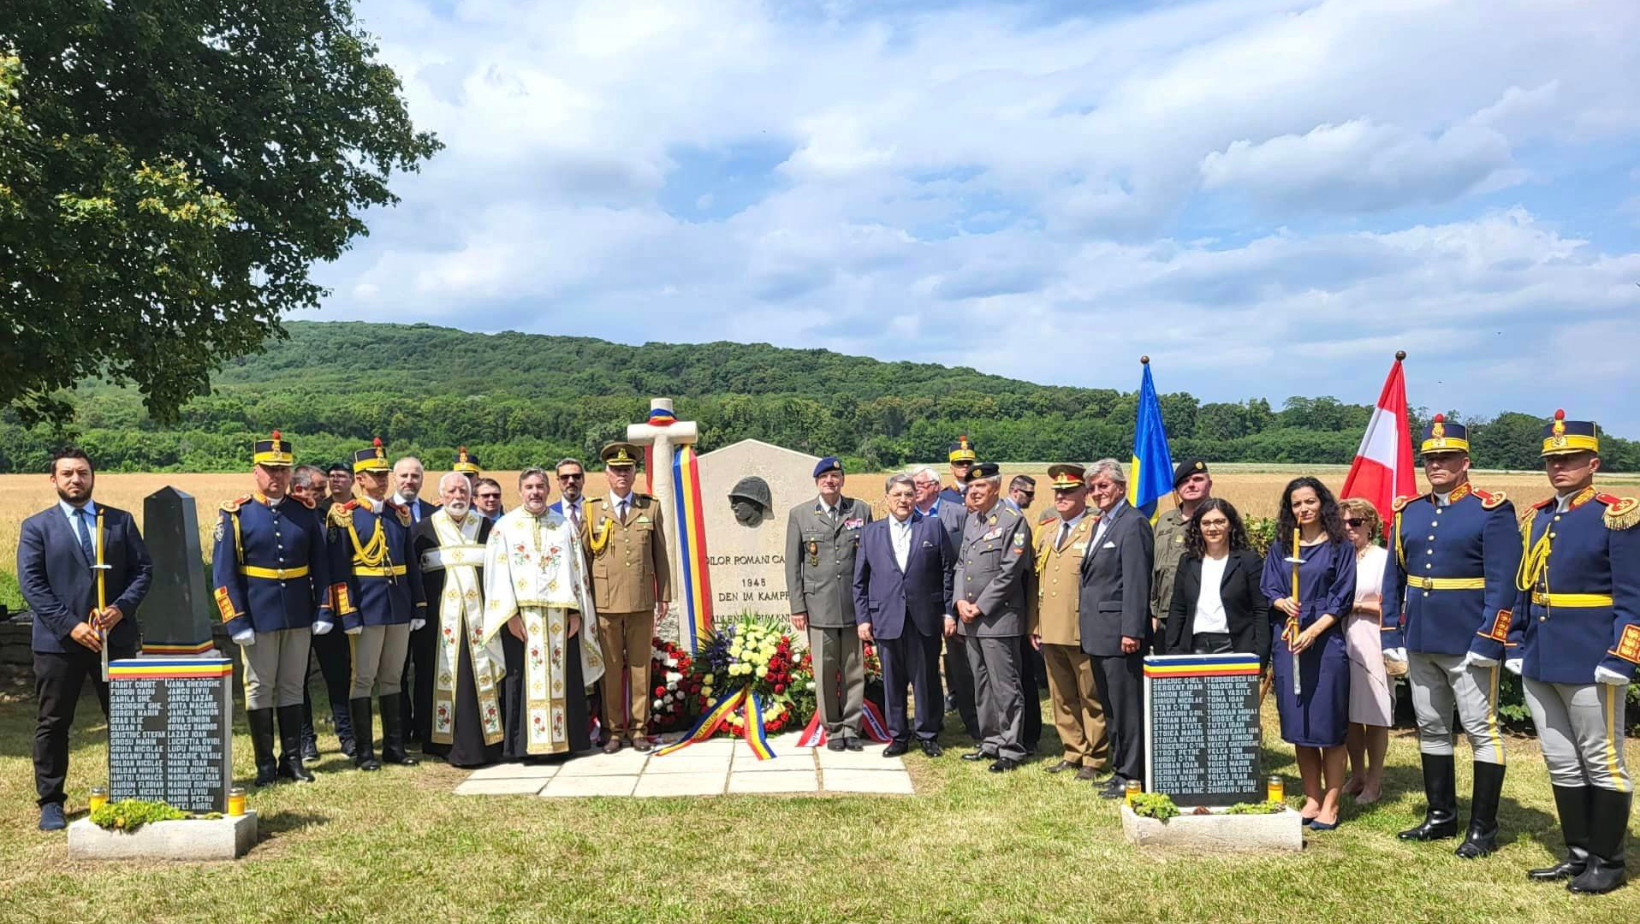 Monumentul Eroilor români din Sommerein, Austria, a fost reabilitat și resfințit